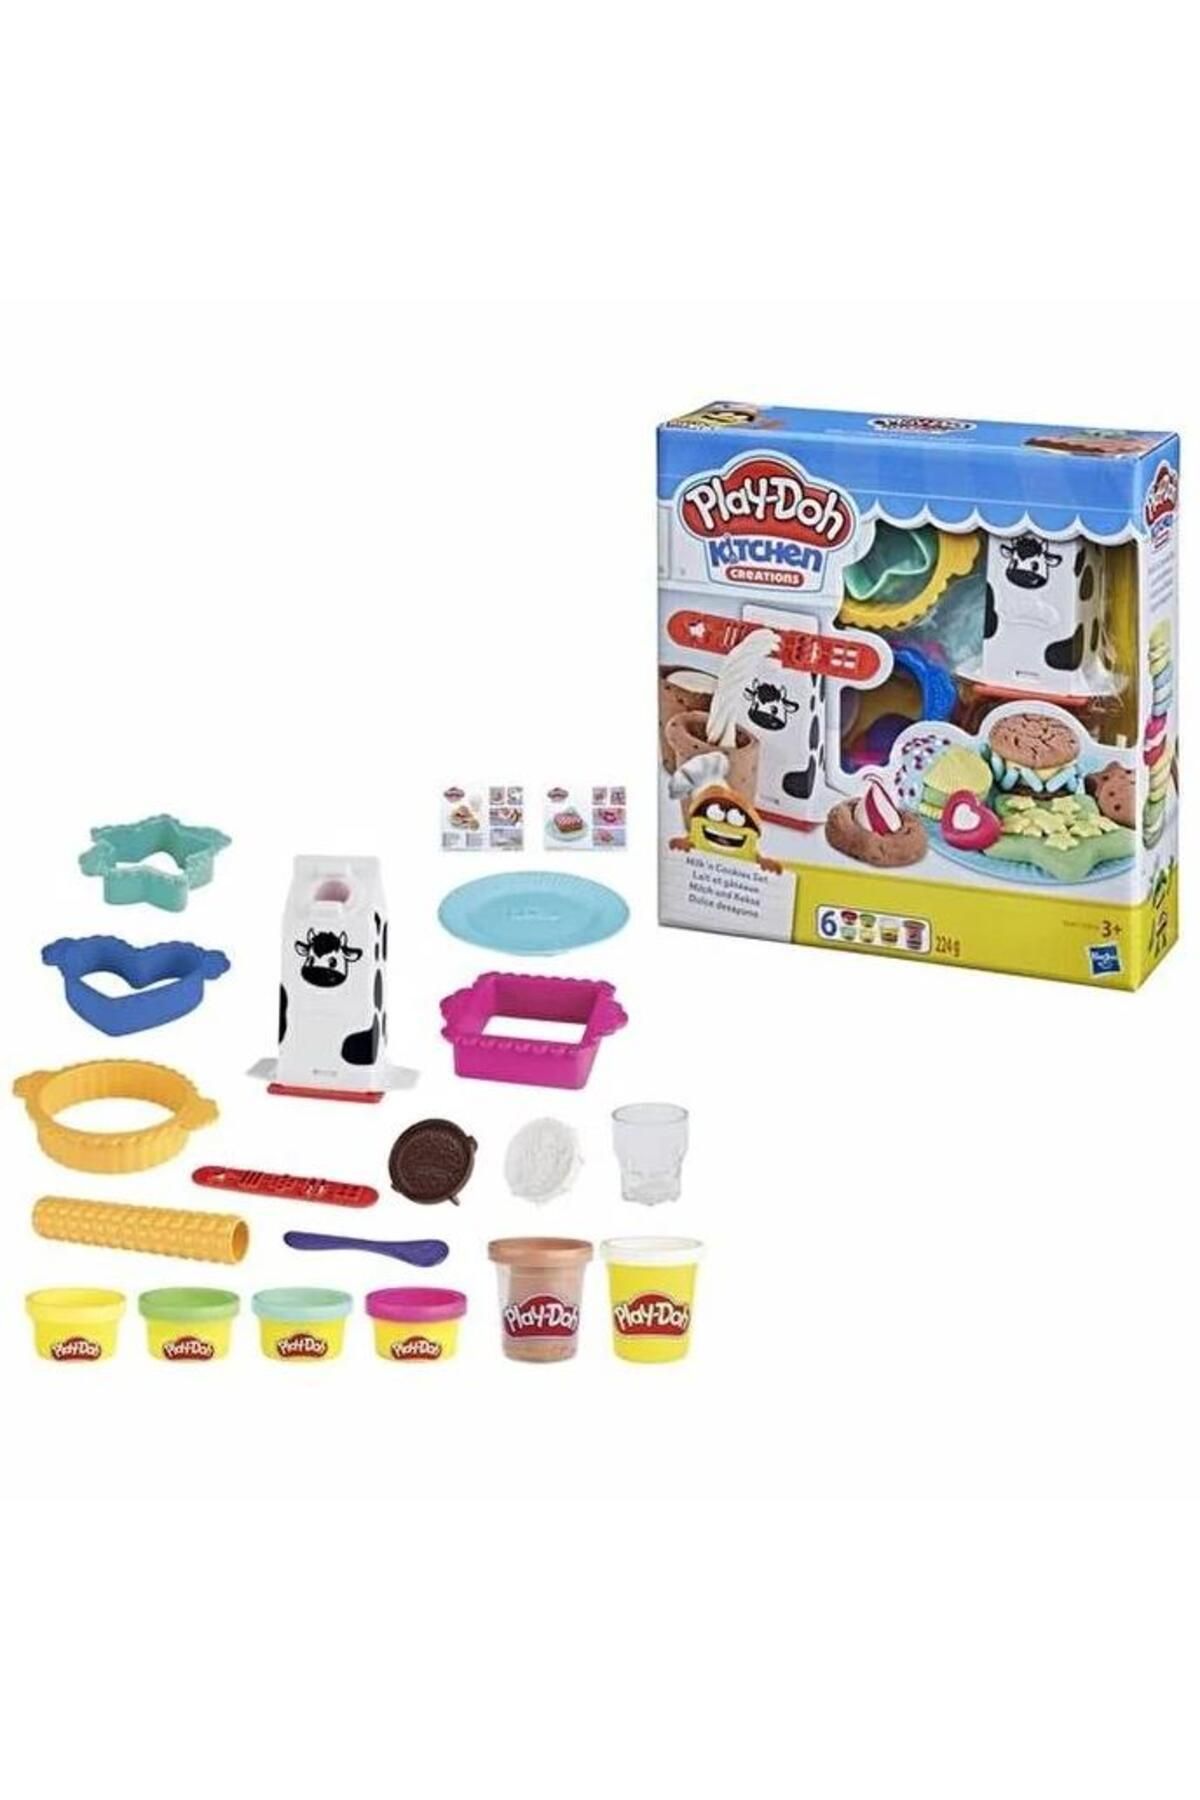 Hasbro Play-doh Mutfak Atölyesi Süt Ve Kurabiye Seti E5112-e5471